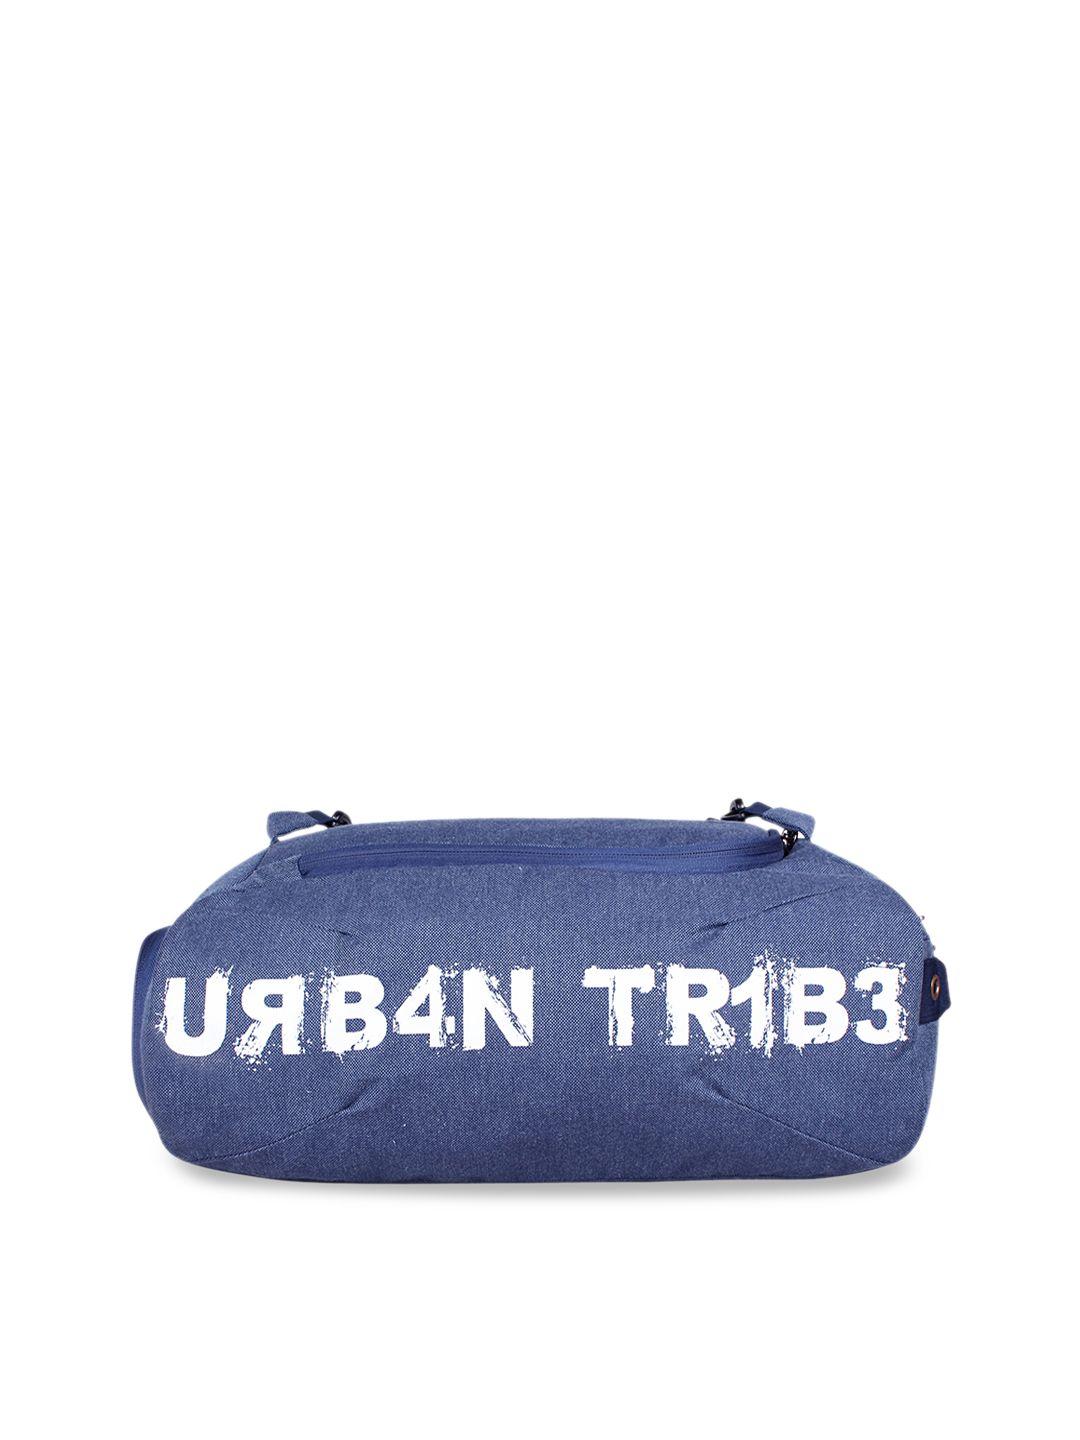 urban tribe blue 23 liters plank gym duffel bag